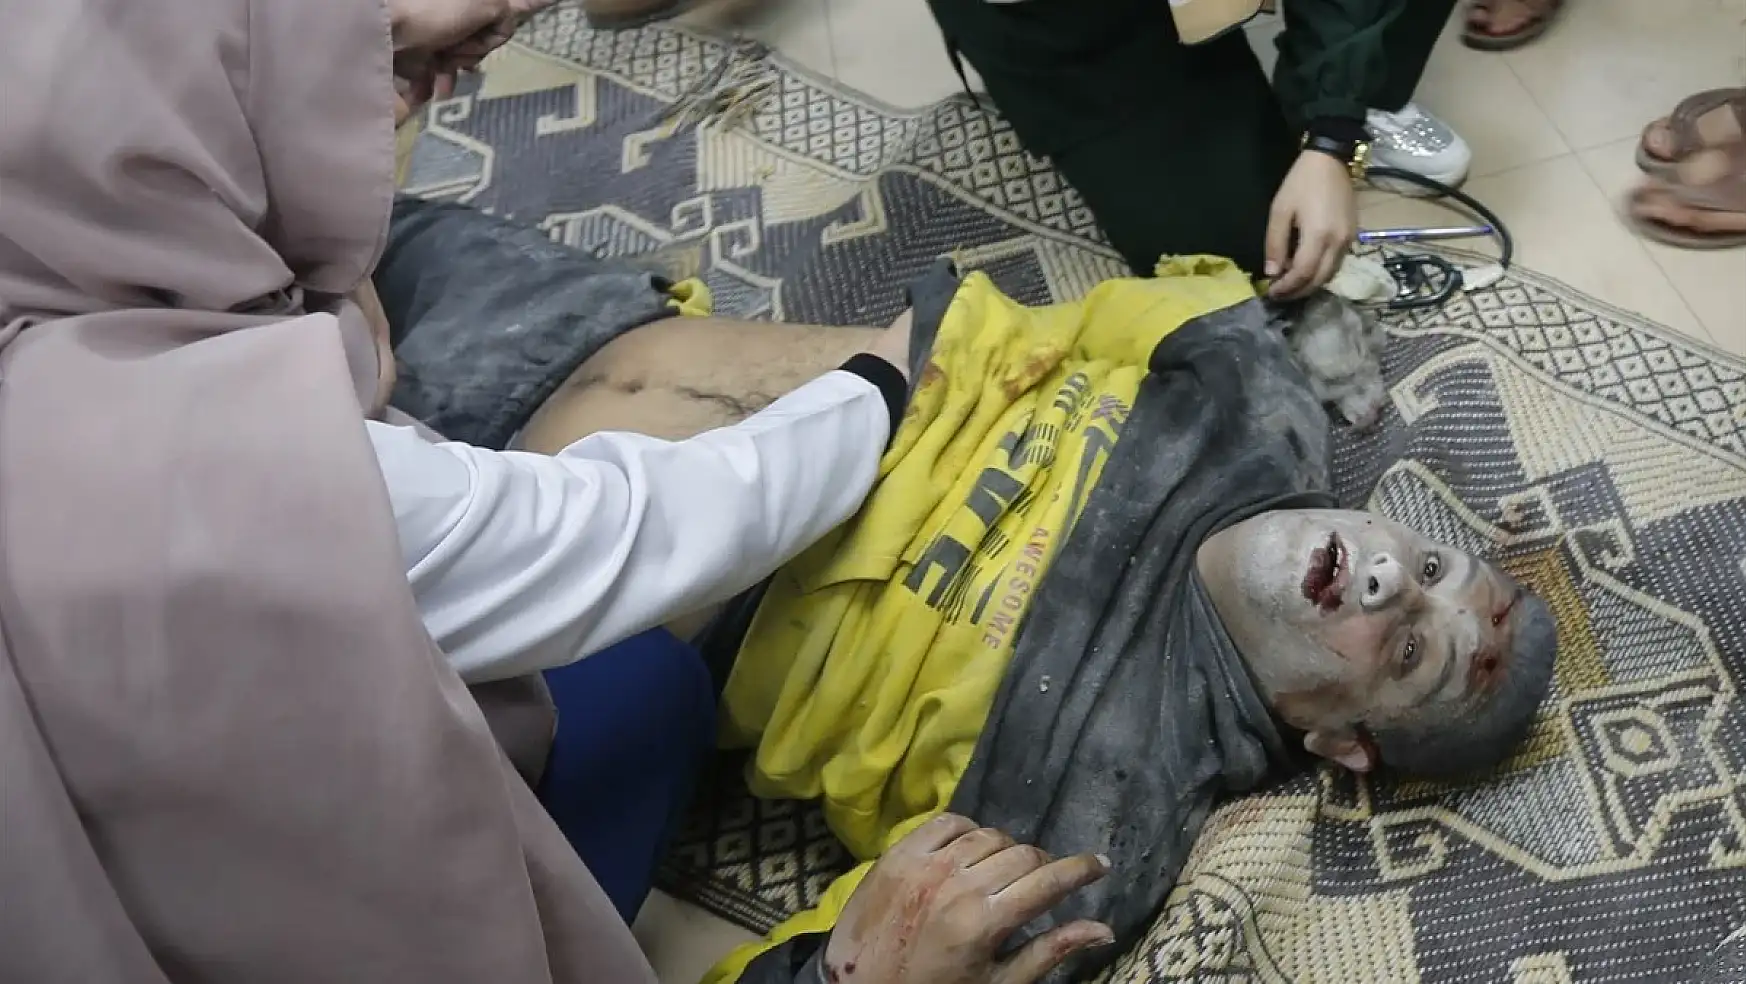 Gazze'de can kaybı 26 bin 422'ye yükseldi